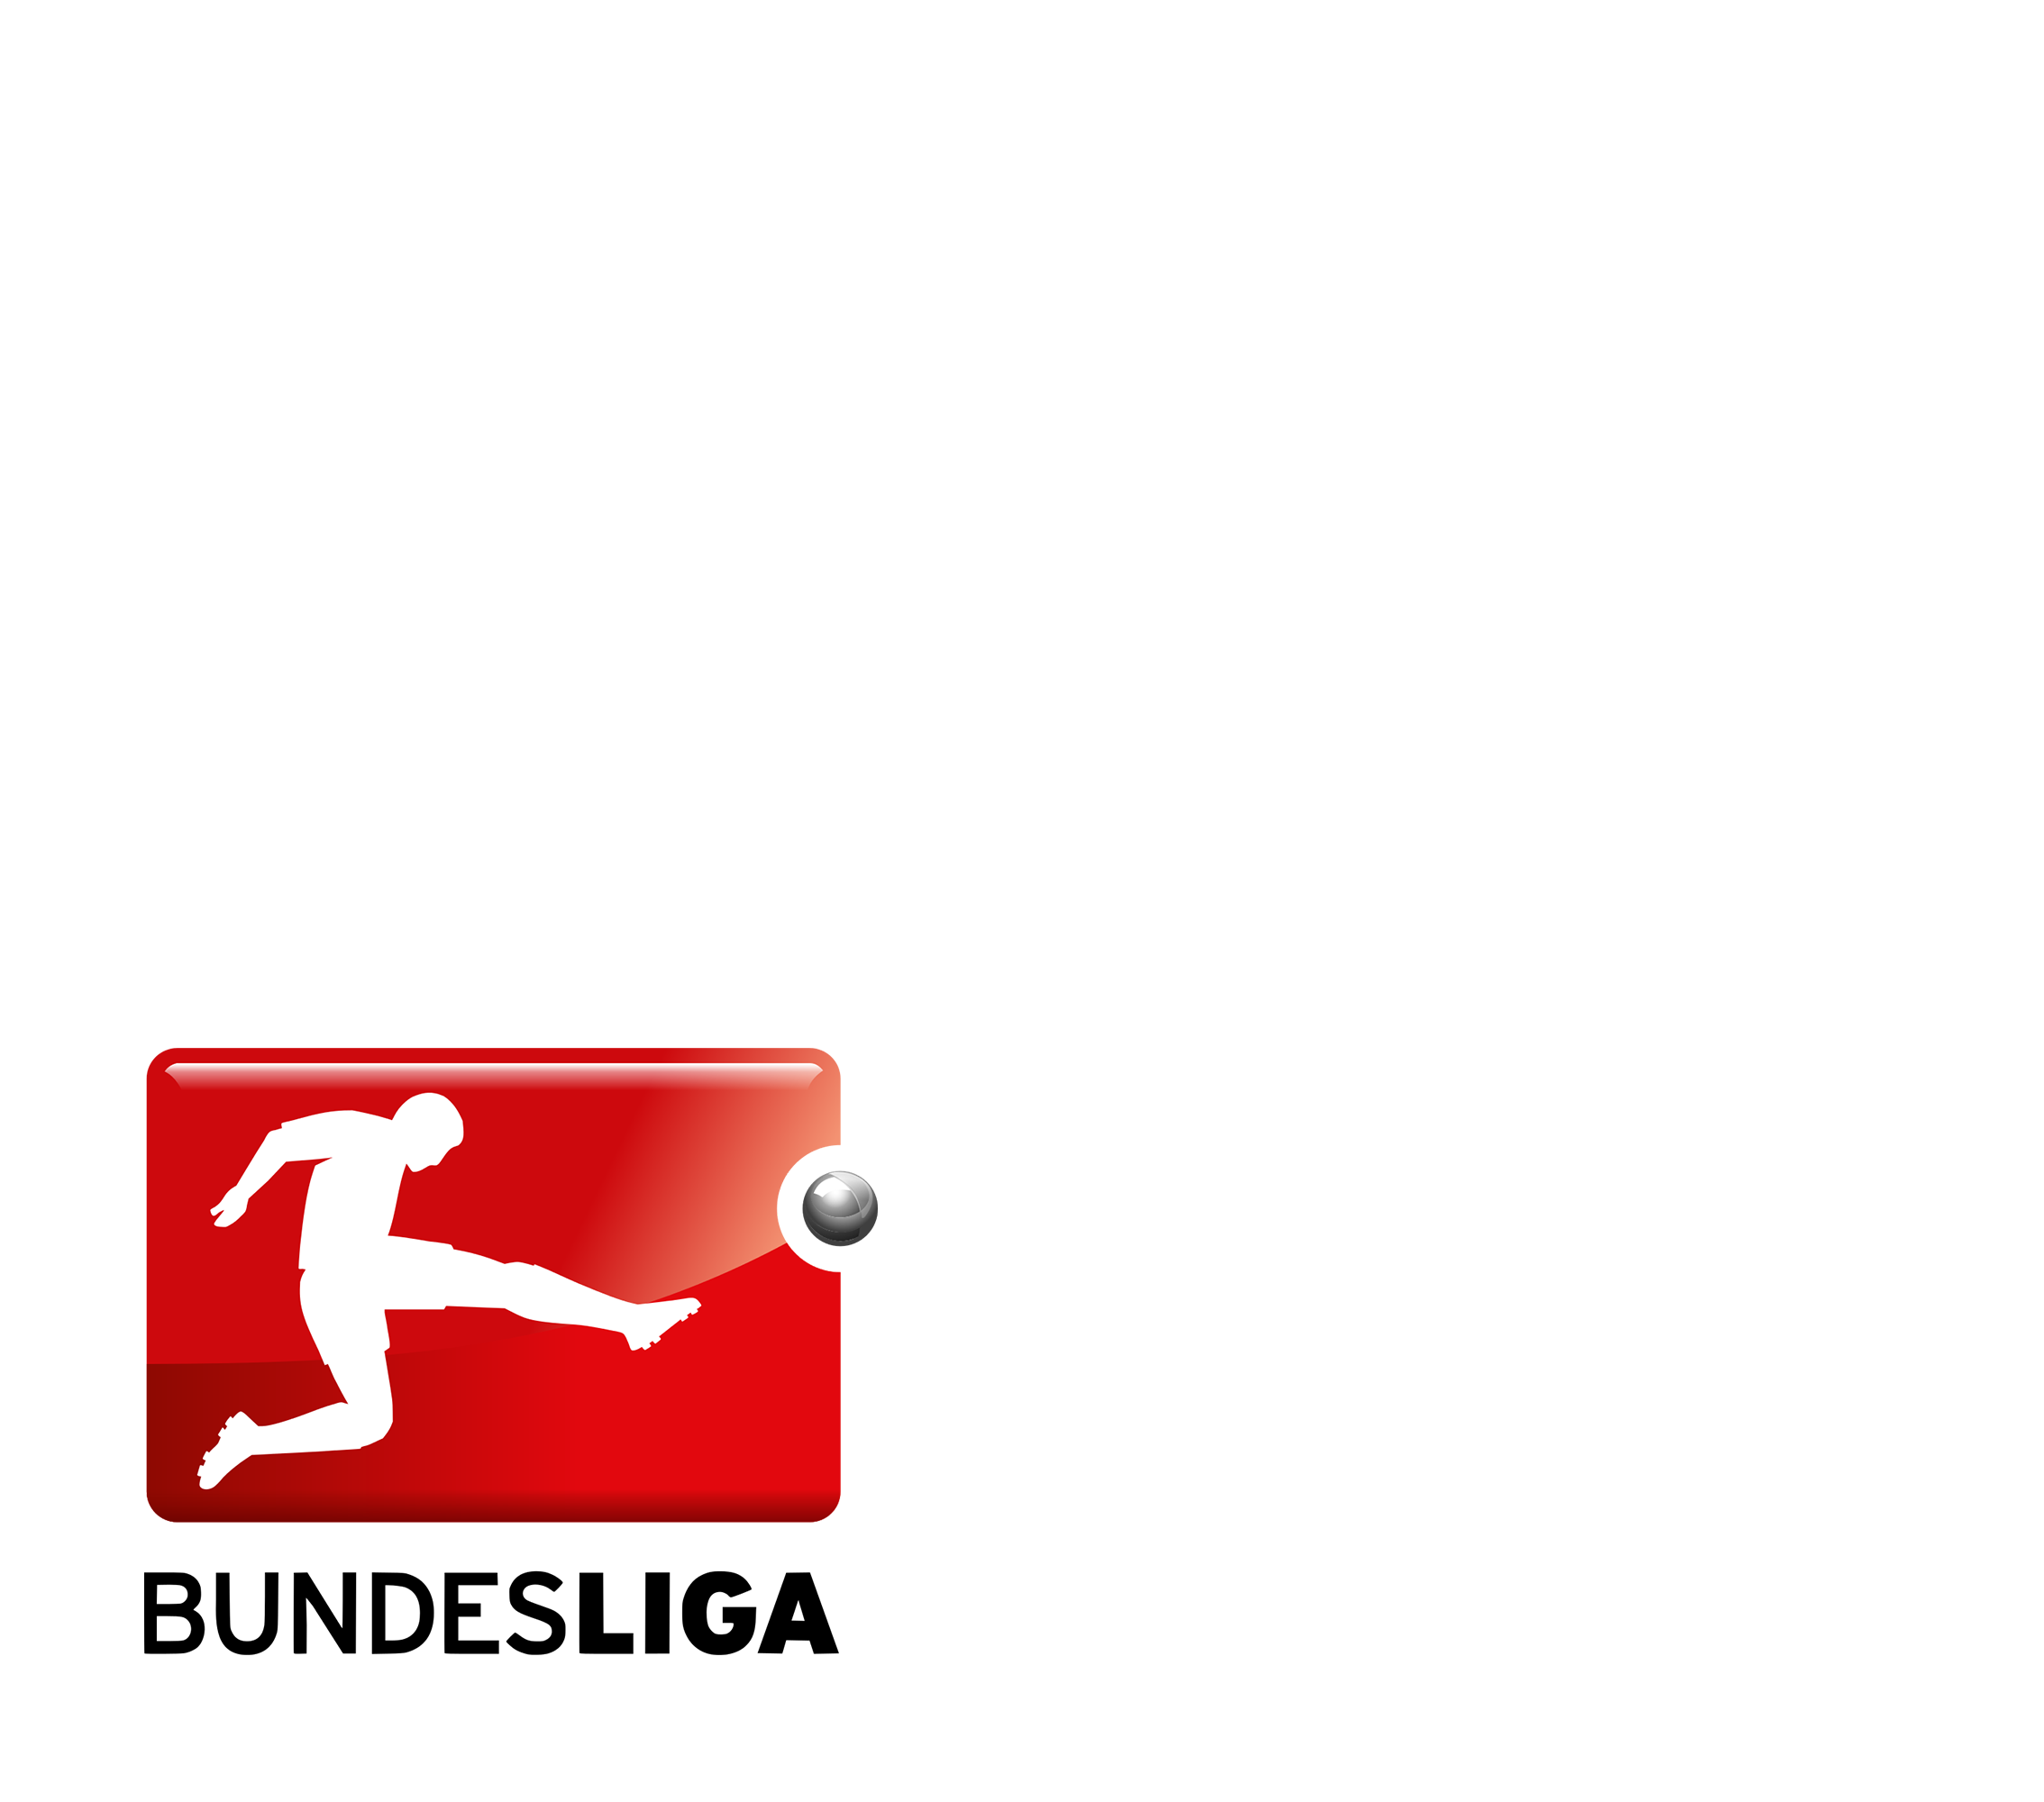 Bundesliga 2020/21